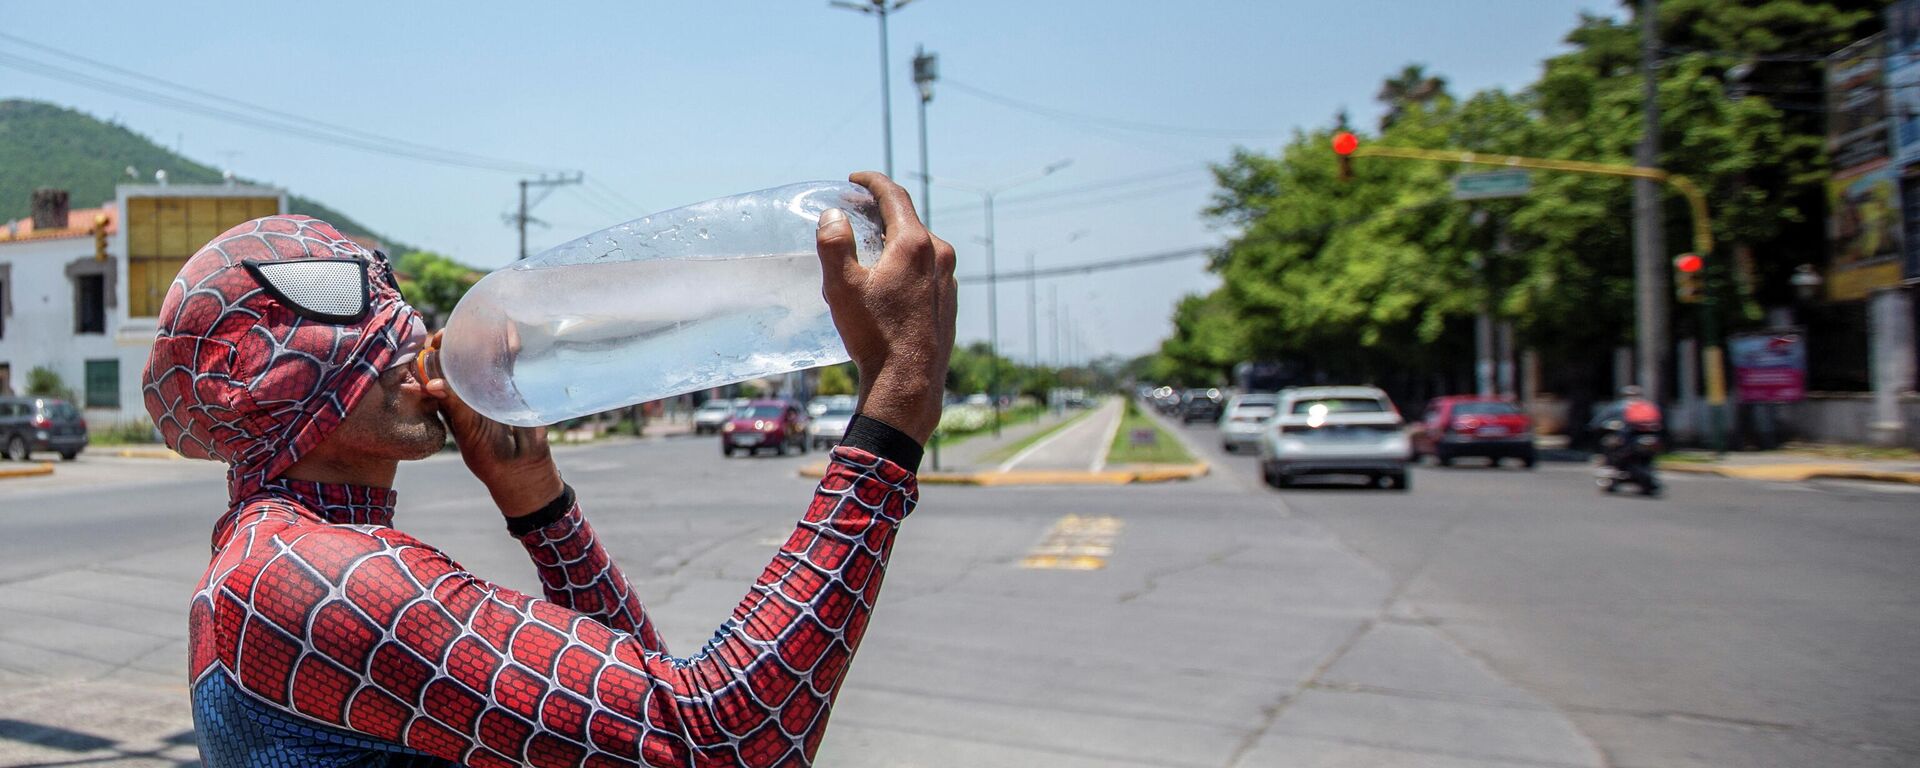 Un hombre disfrazado de Spiderman bebe agua durante la ola de calor en Argentina - Sputnik Mundo, 1920, 14.01.2022